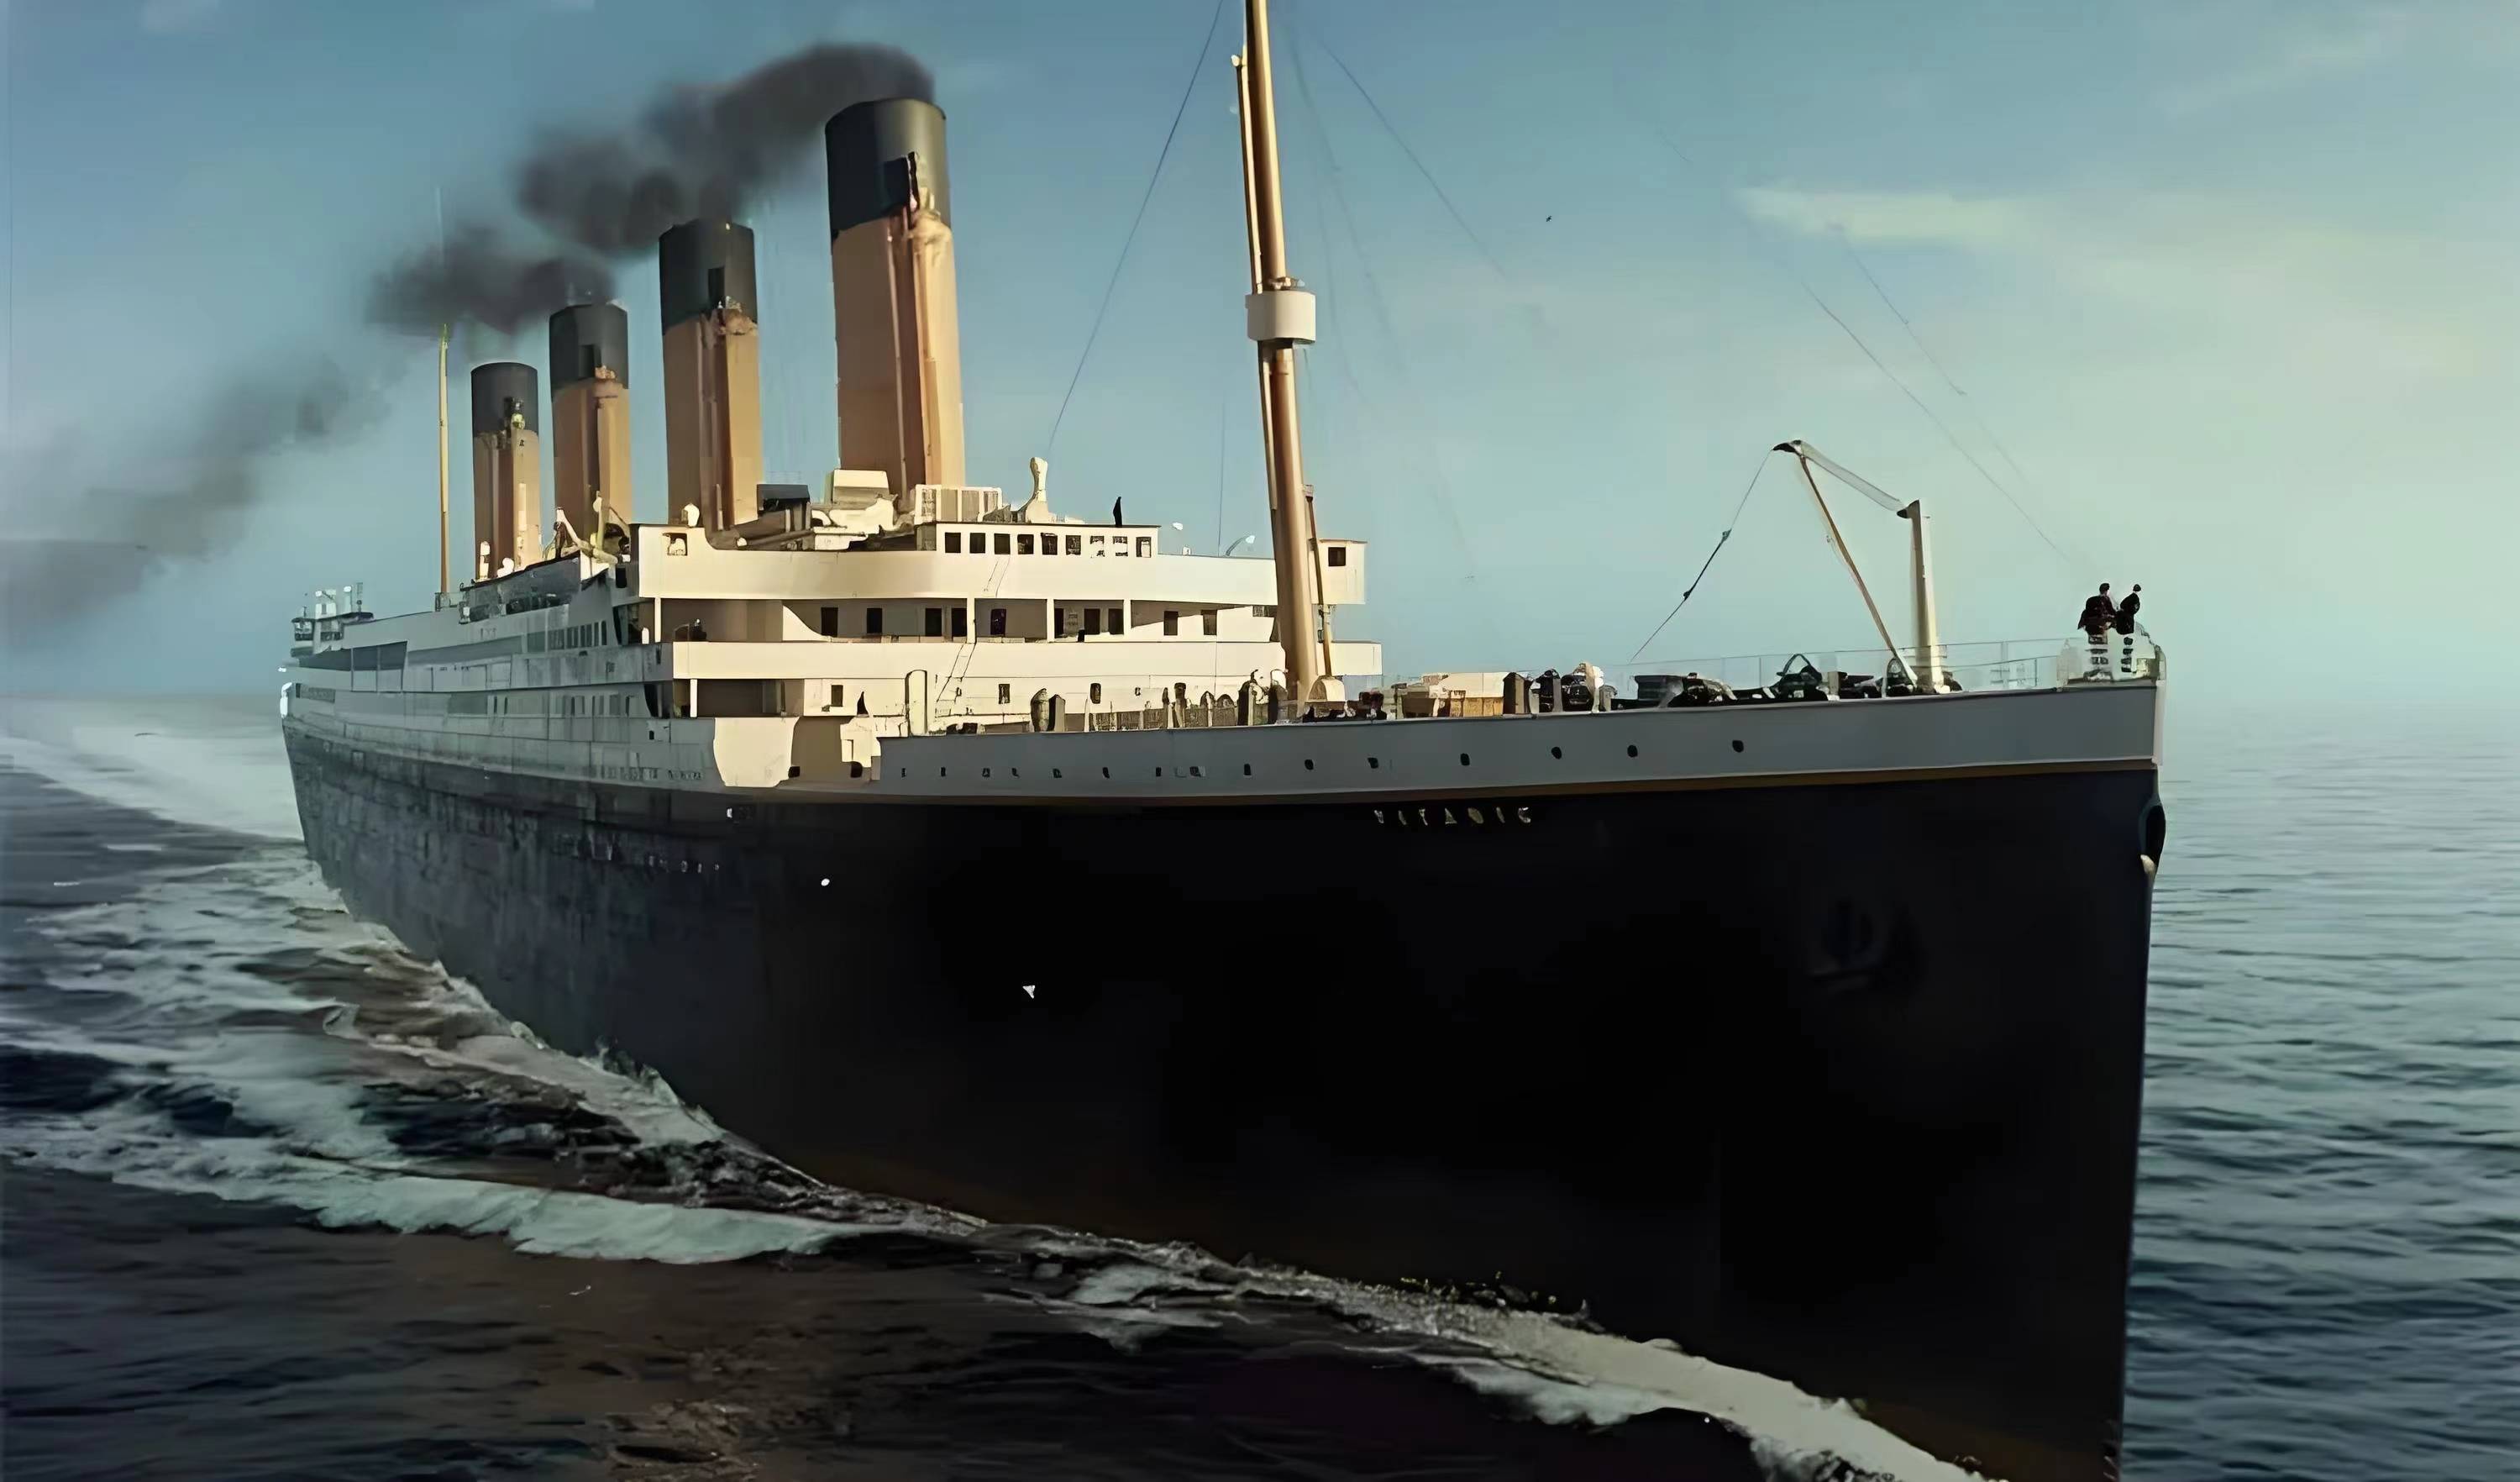 泰坦尼克号:命运的侥幸与不幸?